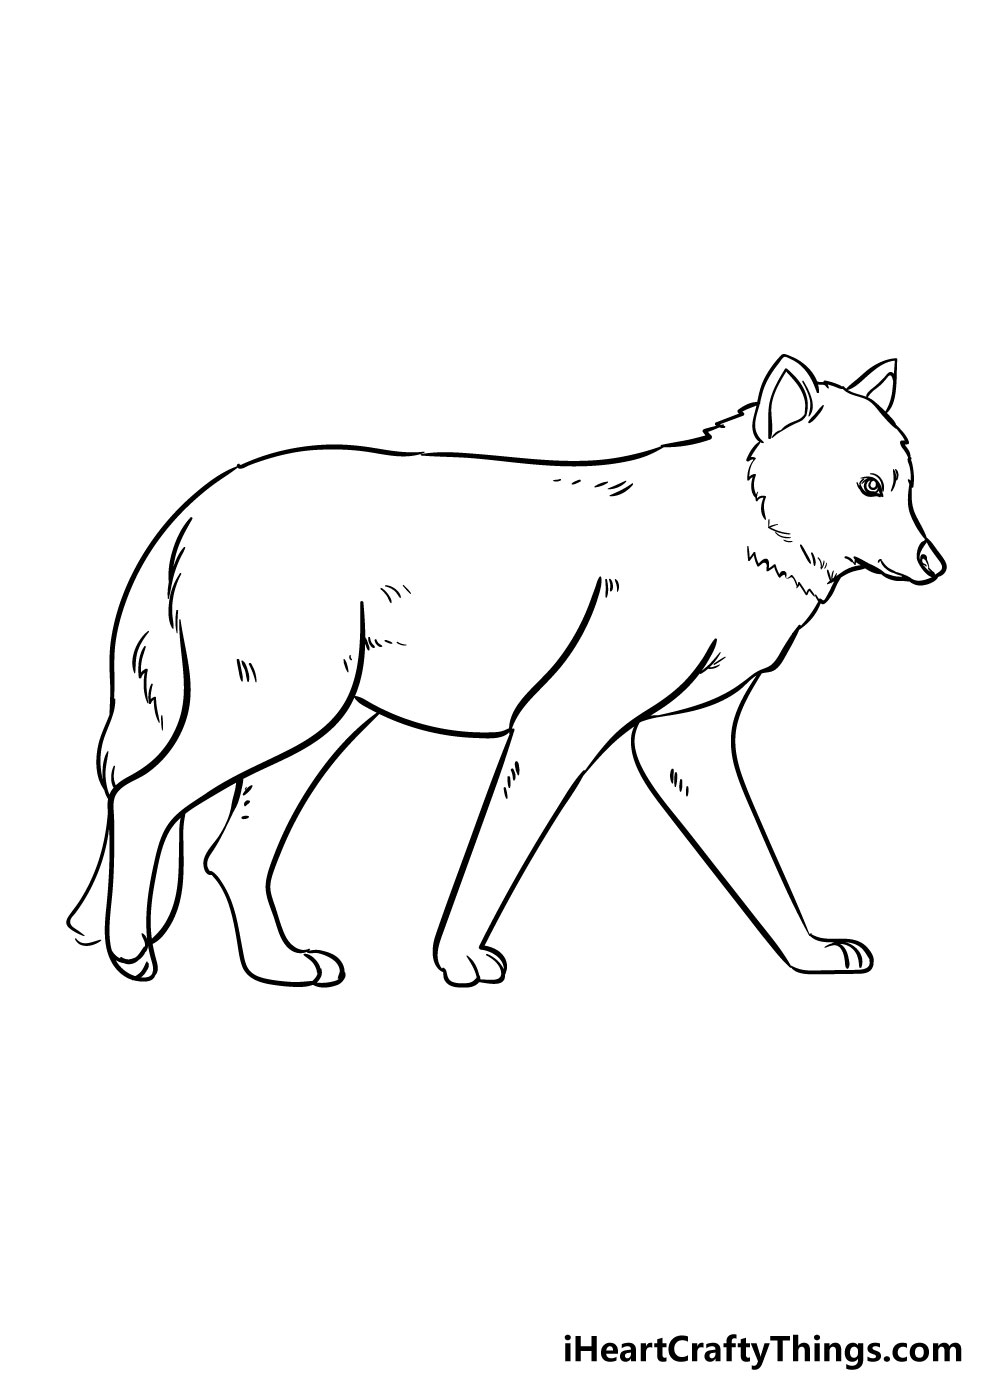 How to draw Wolf 5 - Hướng dẫn cách vẽ con chó sói đơn giản với 6 bước cơ bản